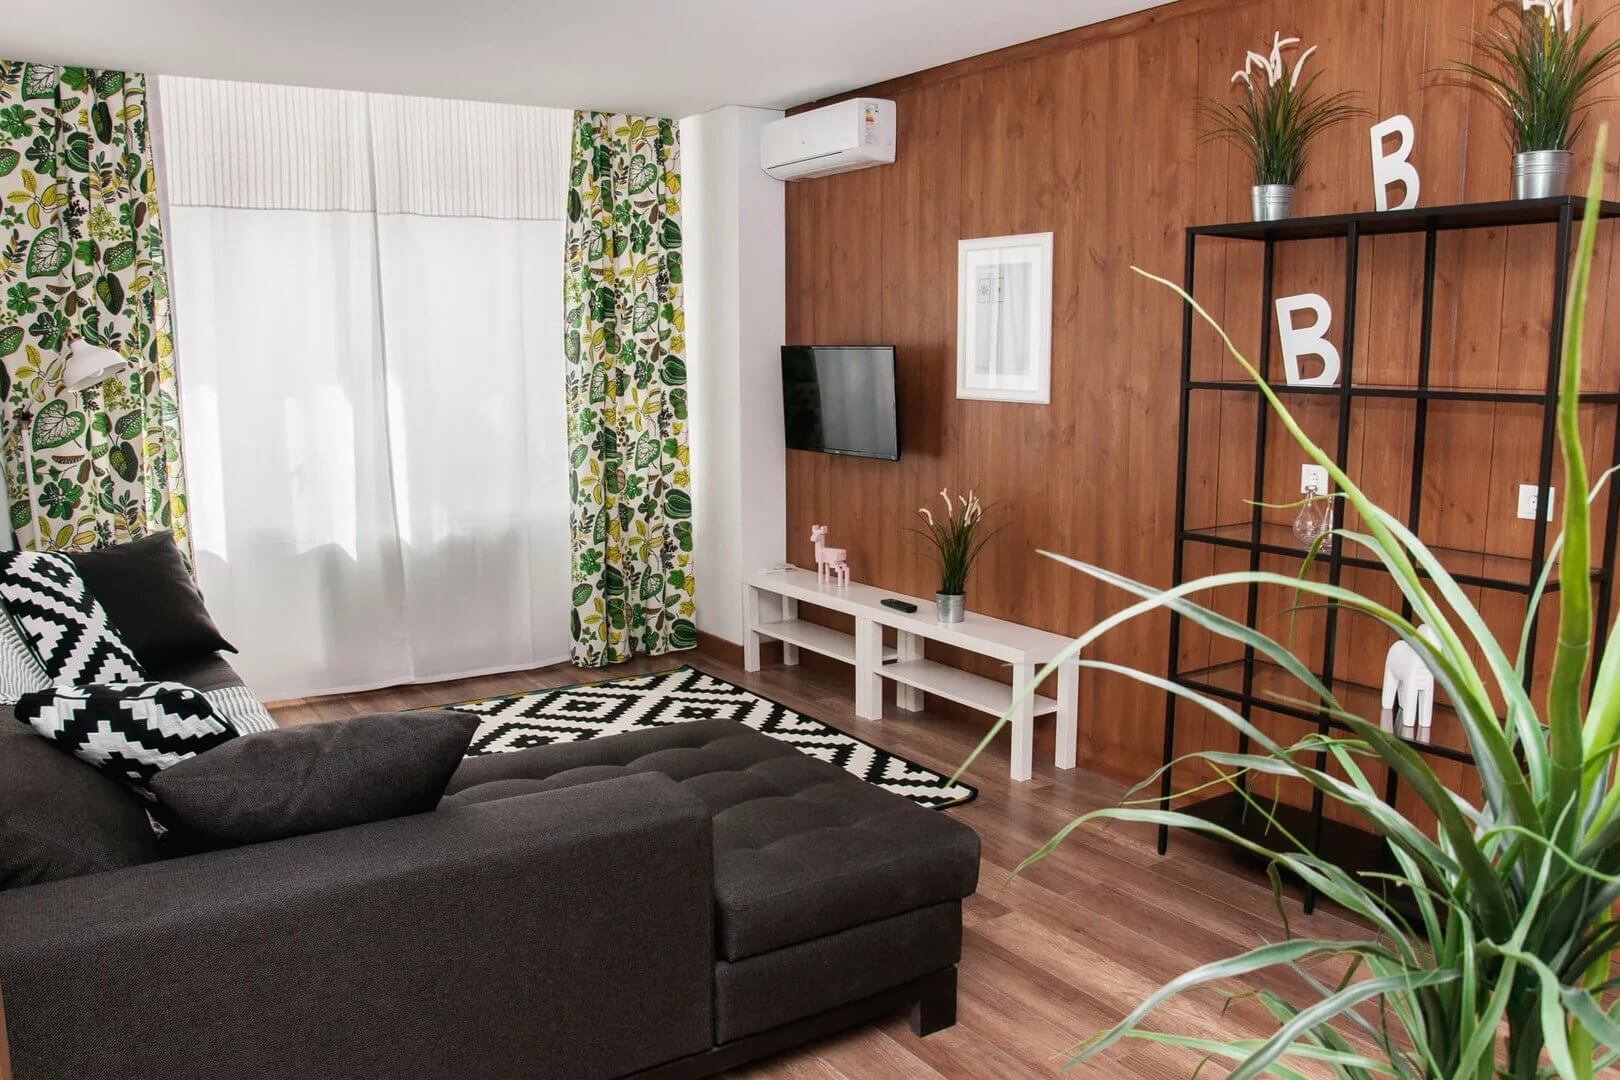 Зона гостиной: большой диван, телевизор на стене, красивые шторы на окнах.